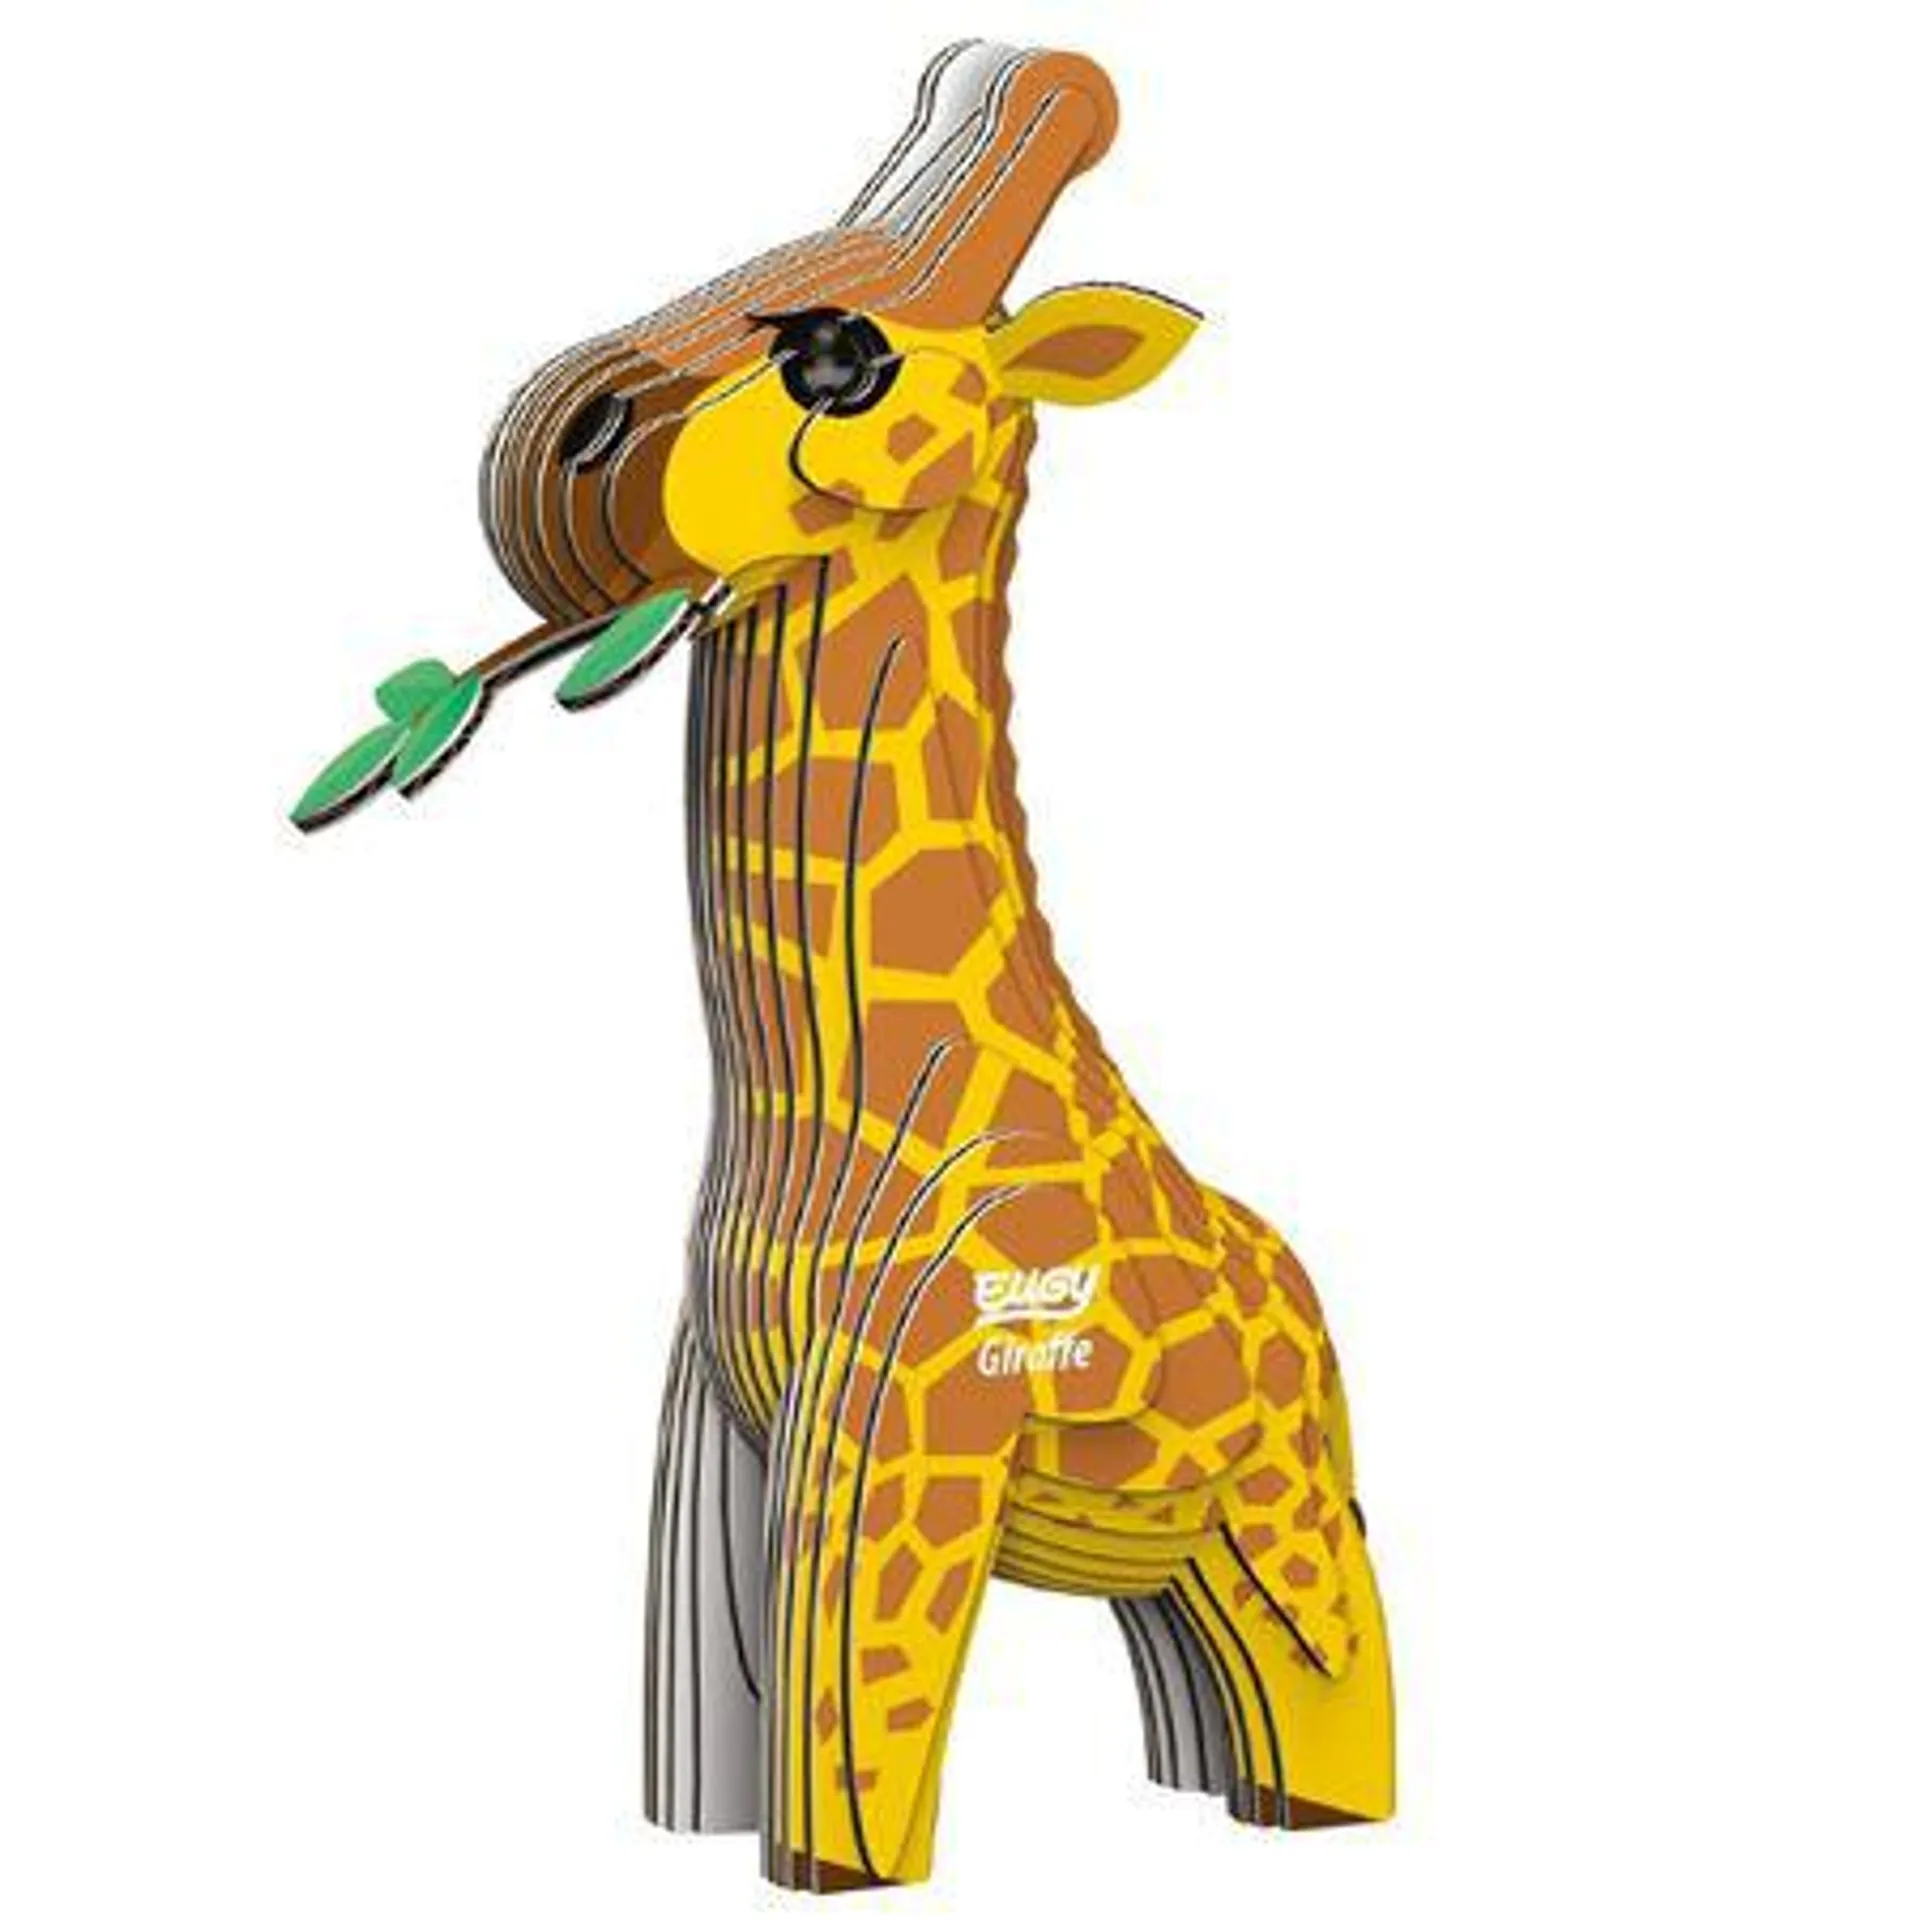 Eugy Puzzle - Giraffe